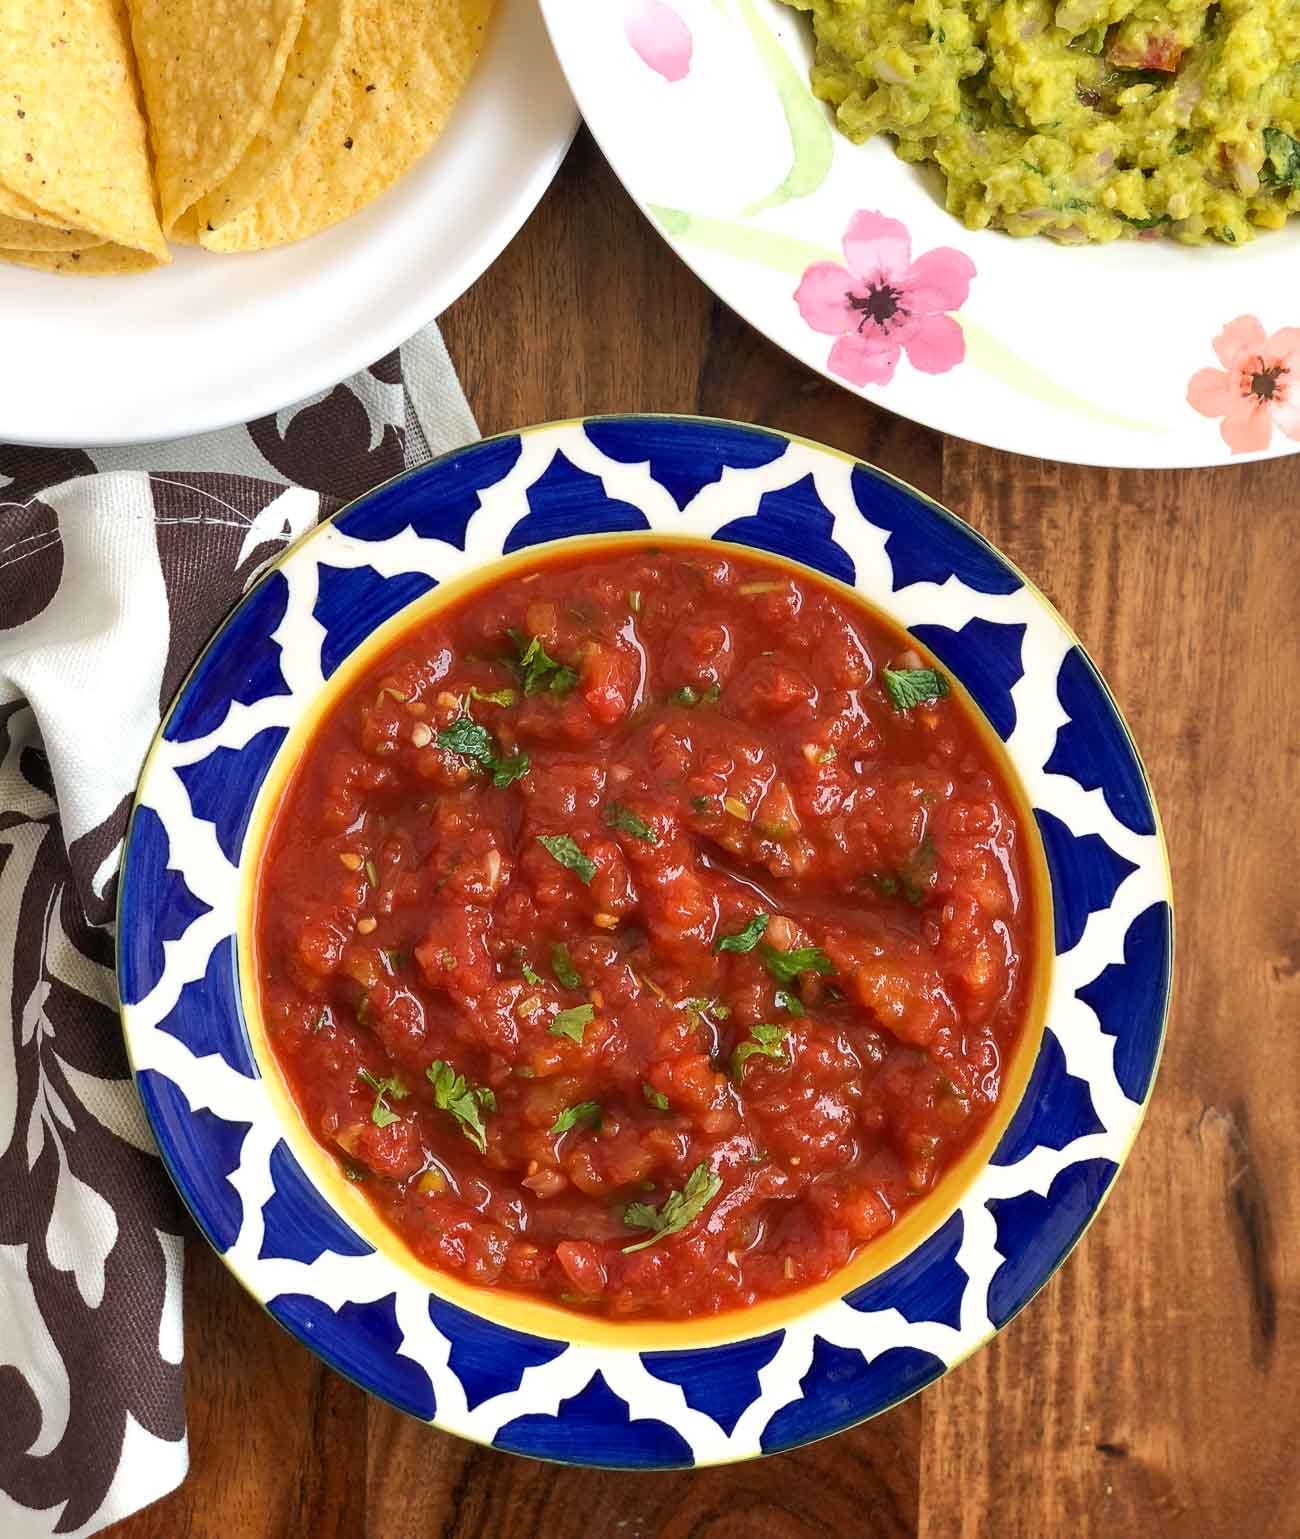 Spicy Mexican Salsa Recipe - Tomato Salsa Recipe